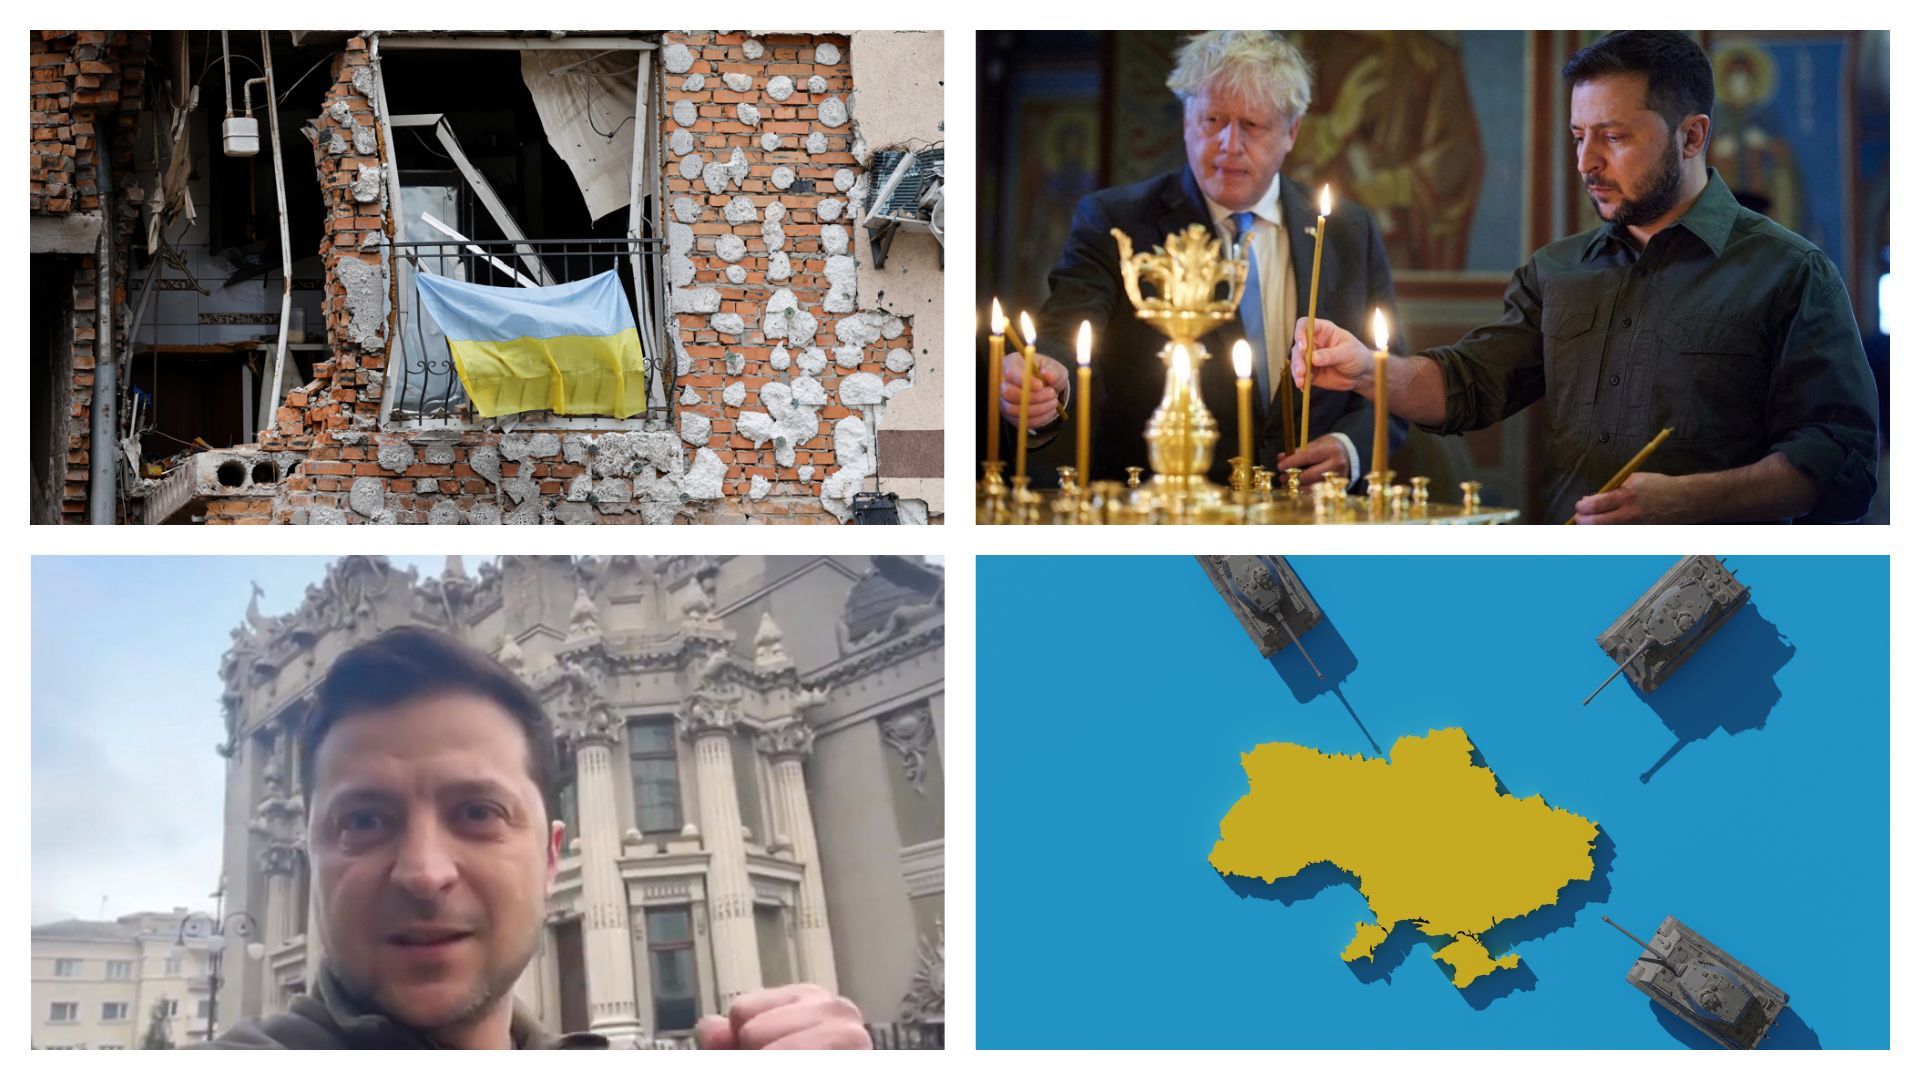 Guerra in Ucraina: le comunicazioni ucraine sulla guerra lasciano scettici gli osservatori occidentali